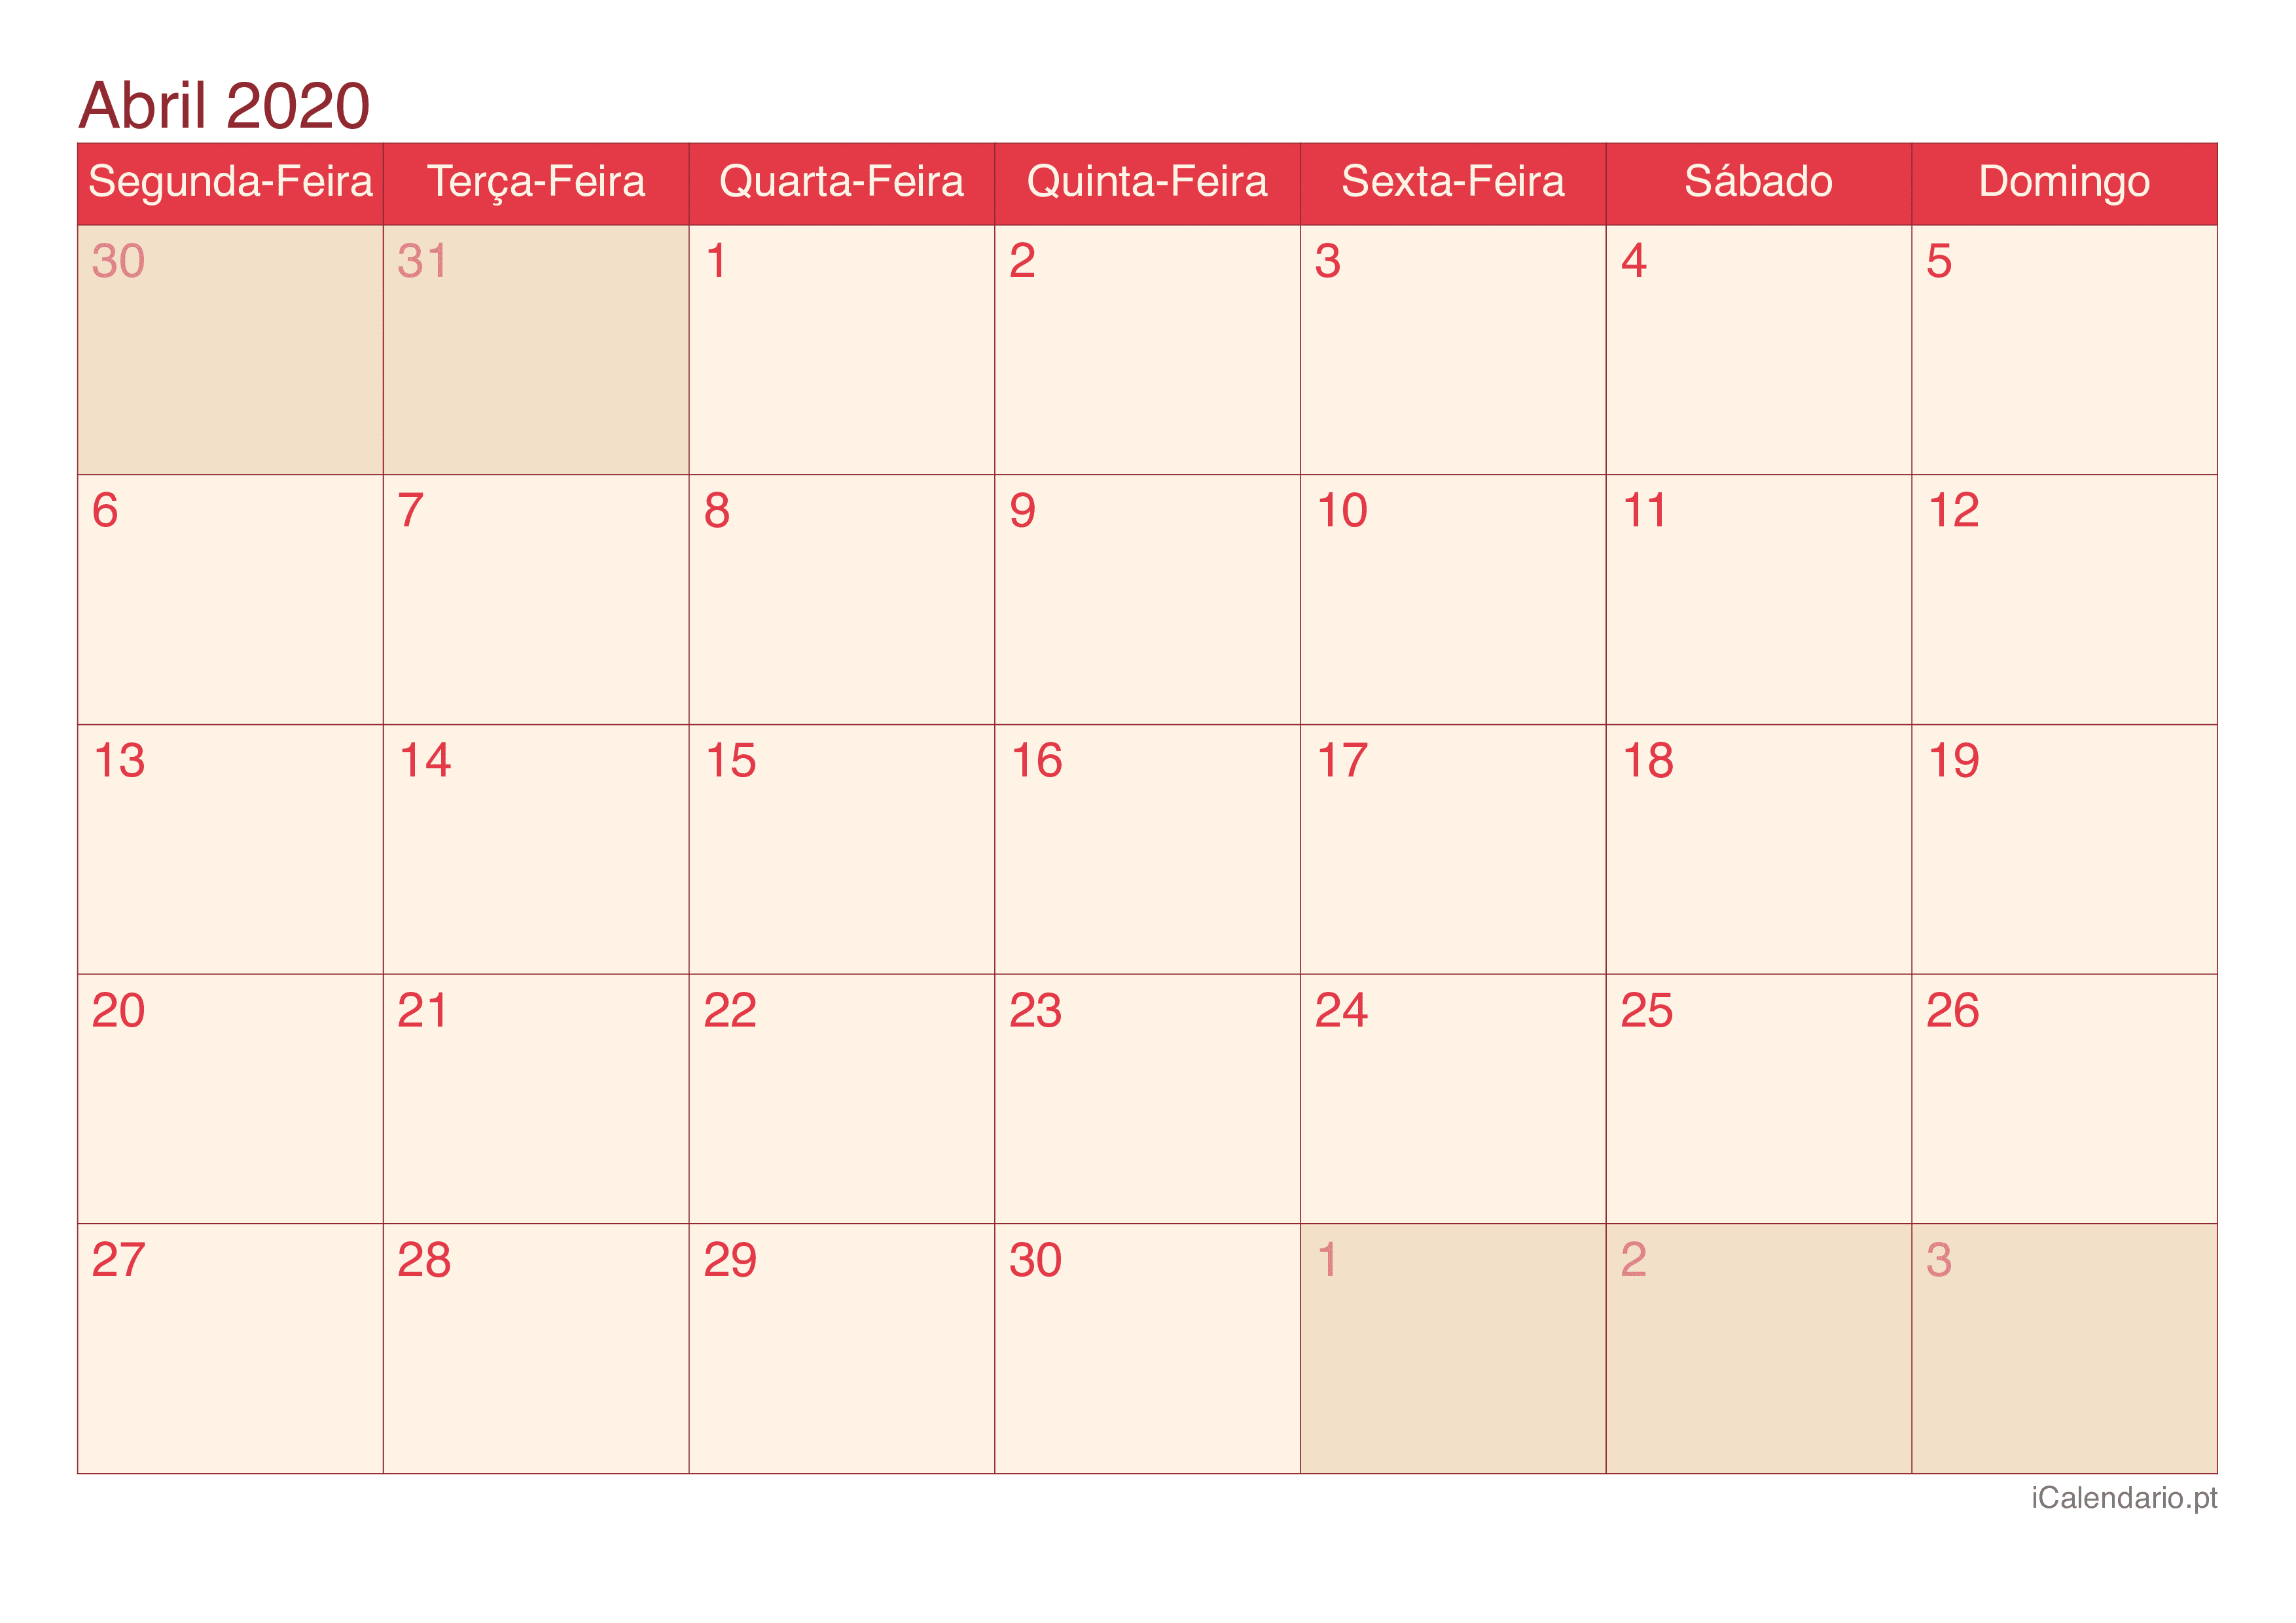 Calendário de abril 2020 - Cherry